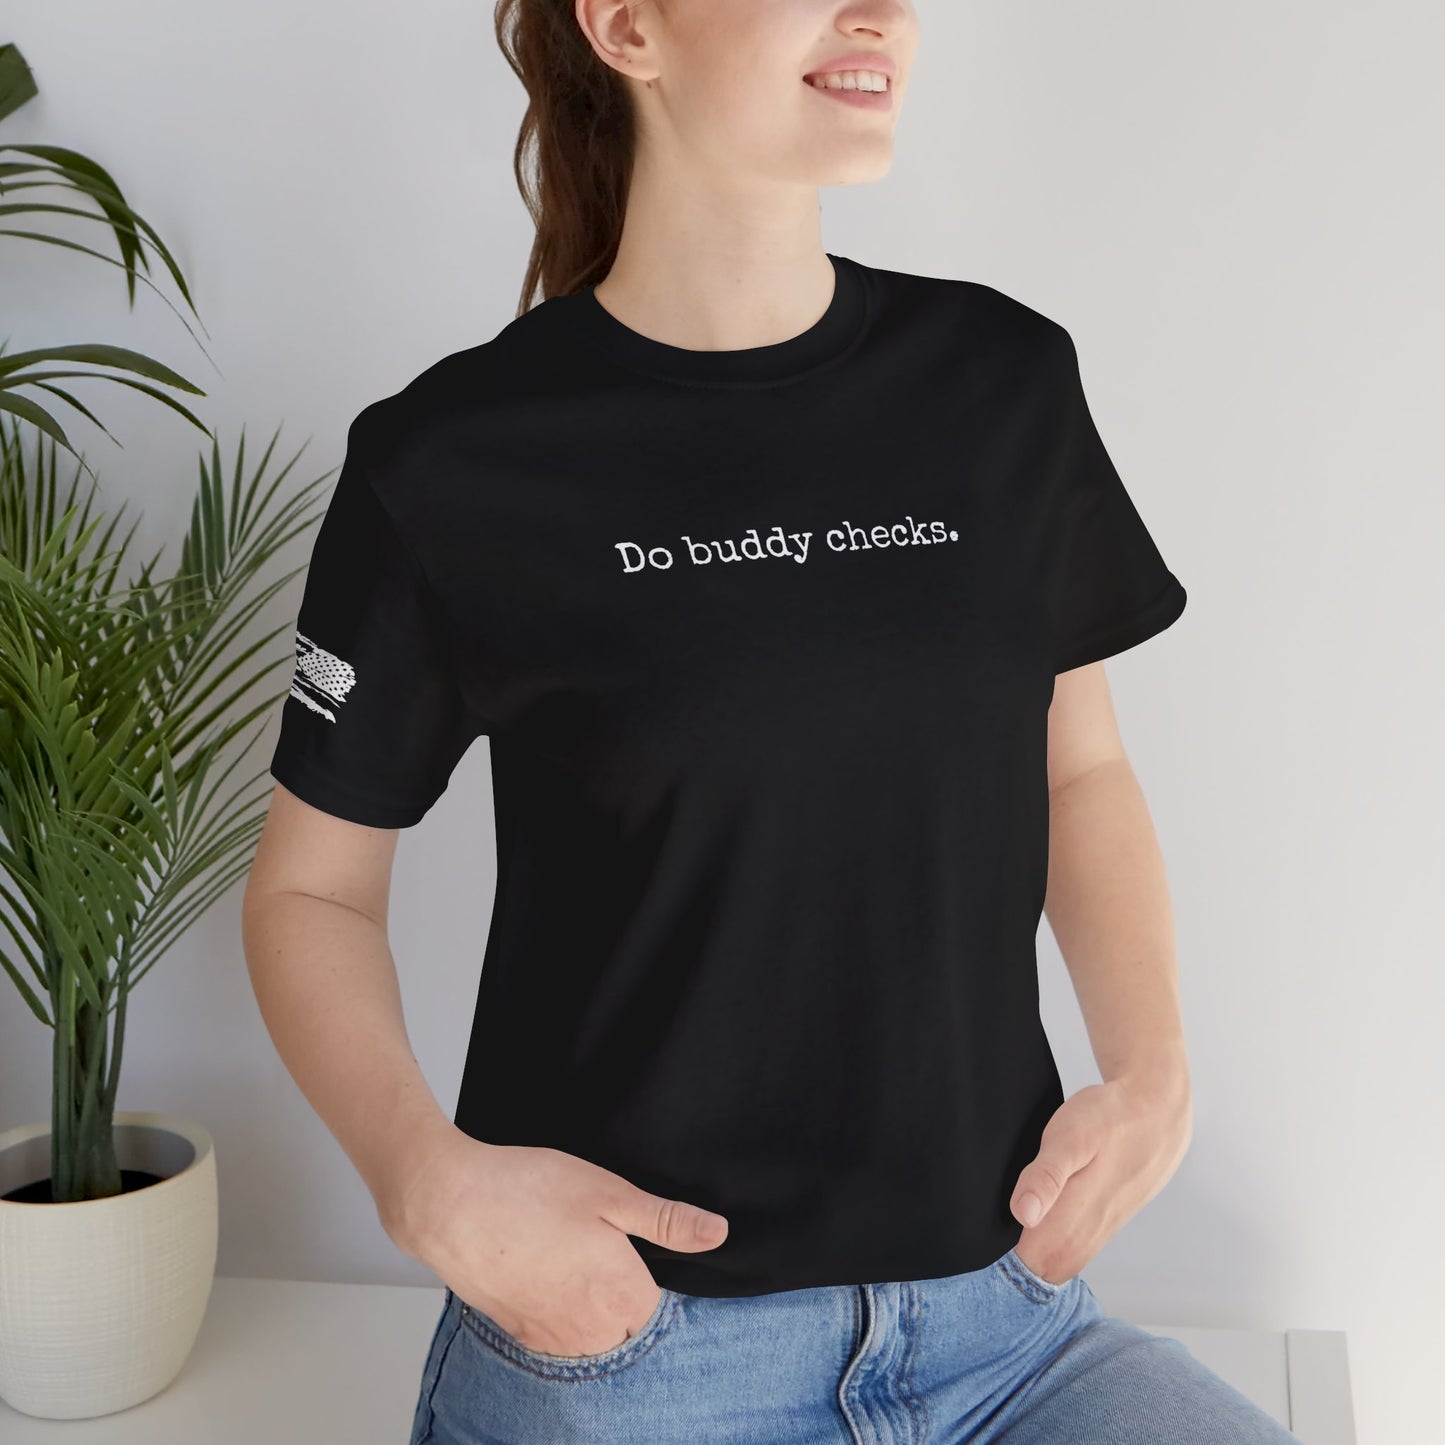 Do Buddy Checks T Shirt, mental health awareness, suicide prevention